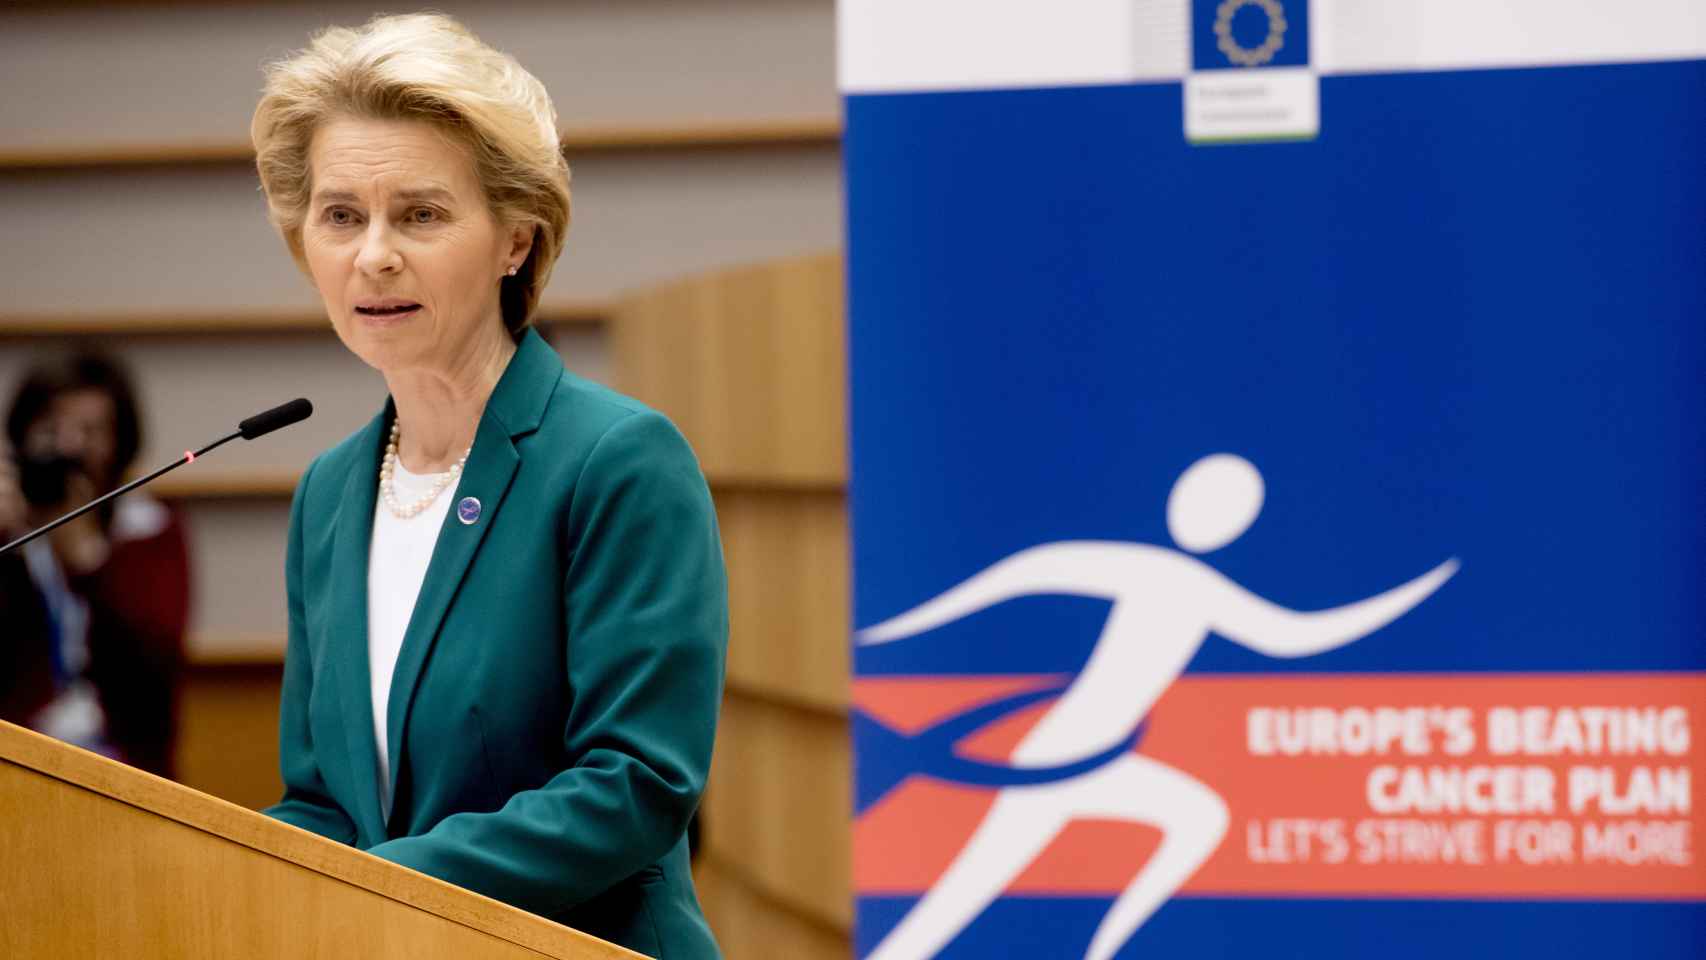 La presidenta de la Comisión, Ursula von der Leyen, durante un acto contra el cáncer el año pasado